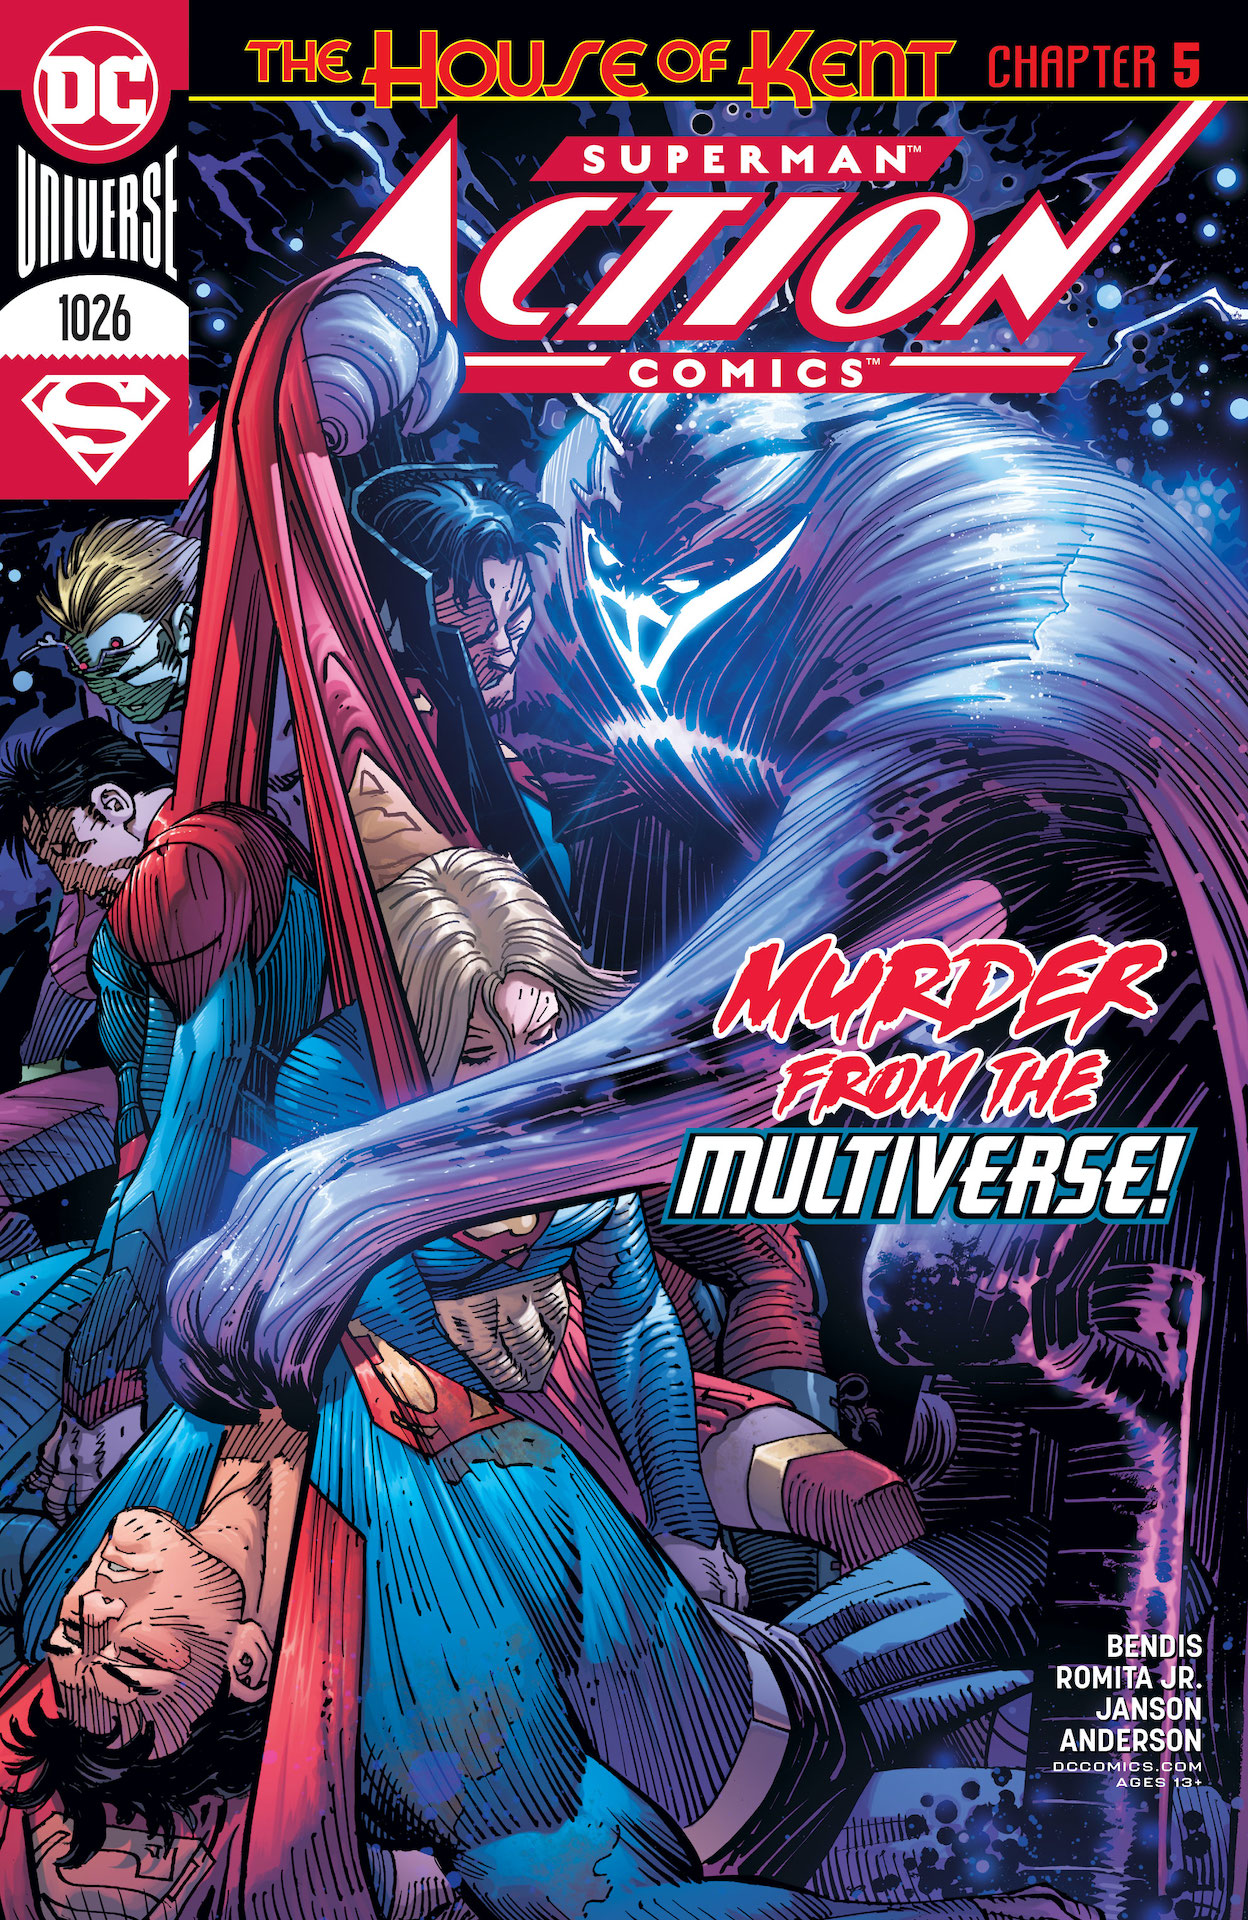 DC Preview: Action Comics #1026